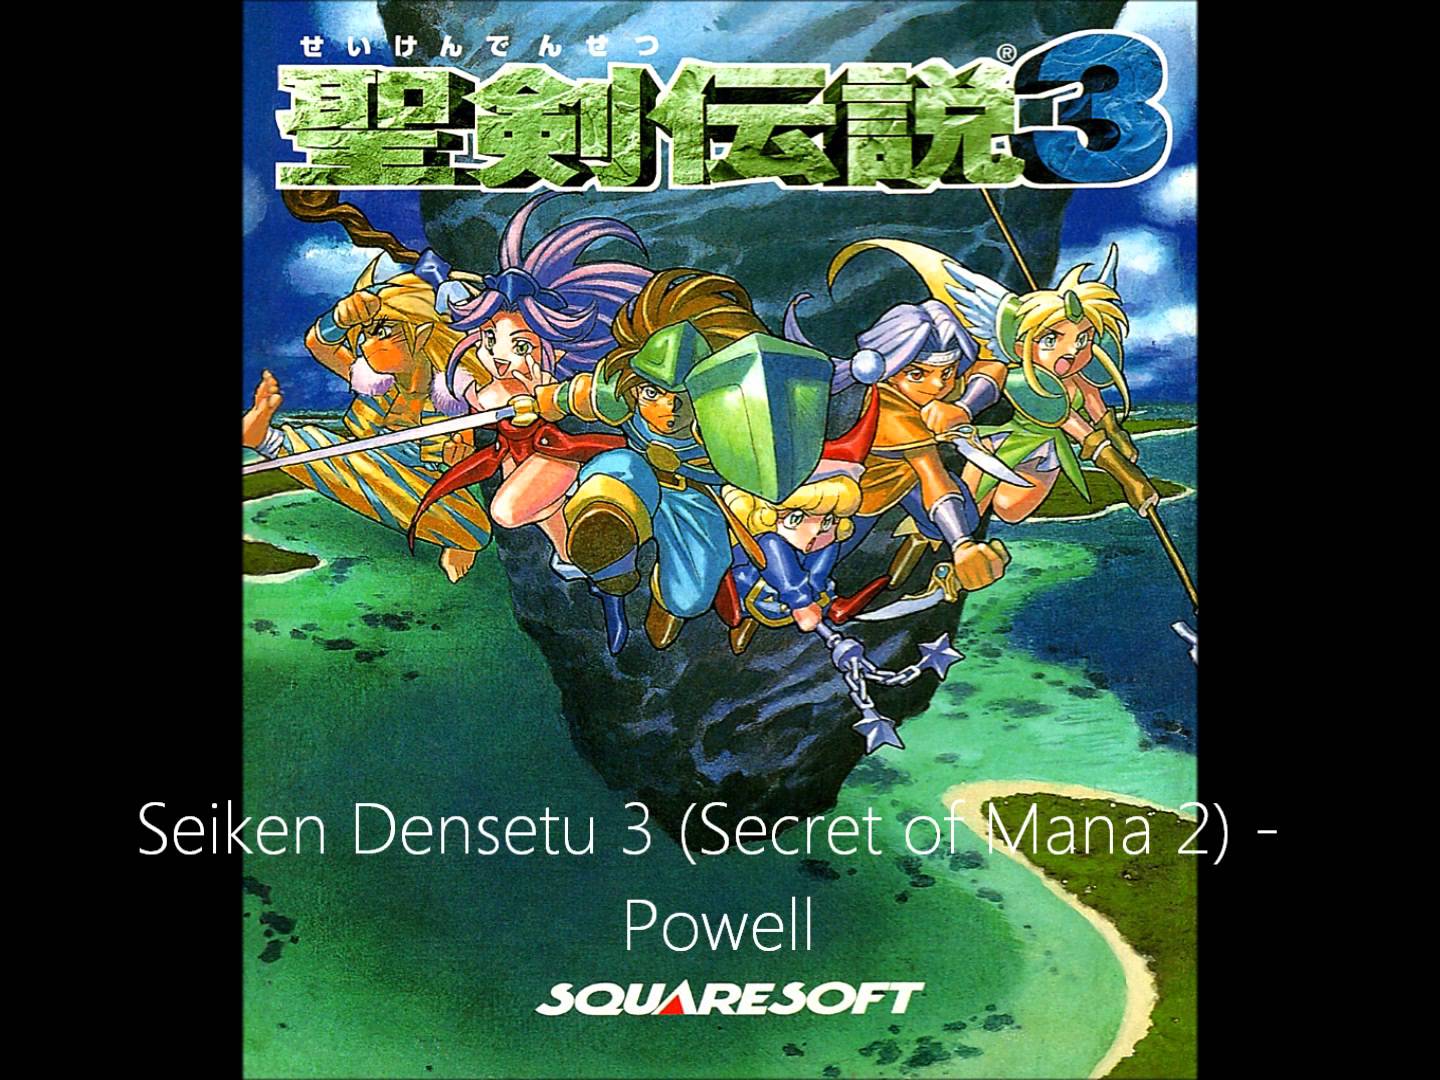 Seiken Densetsu 3 Pics, Video Game Collection